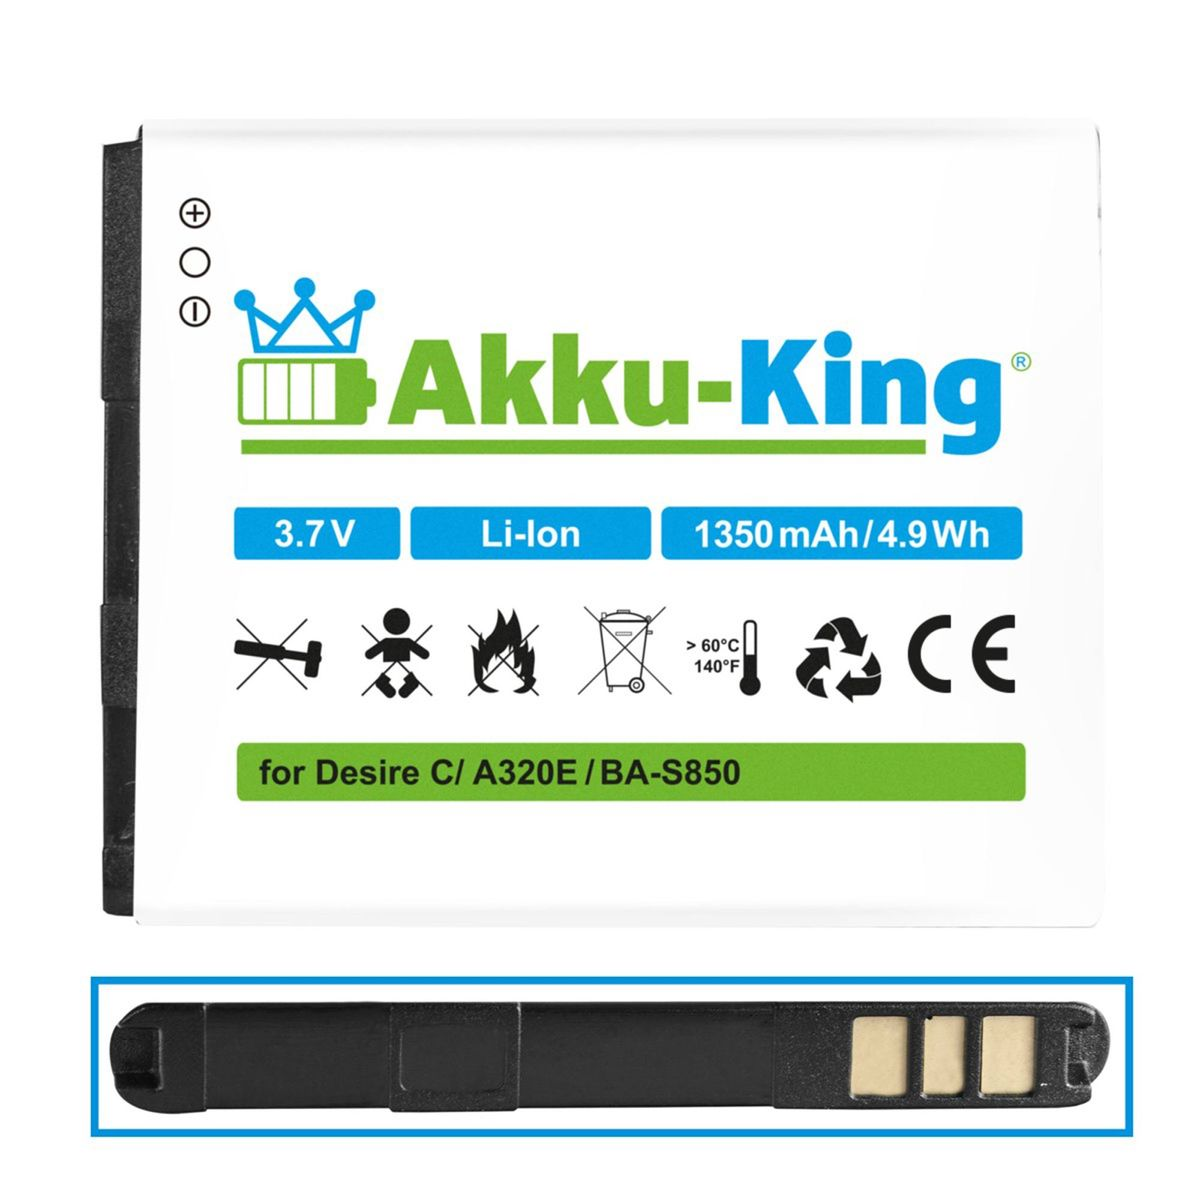 AKKU-KING Akku kompatibel mit 3.7 1350mAh HTC Li-Ion Volt, BA-S850 Handy-Akku